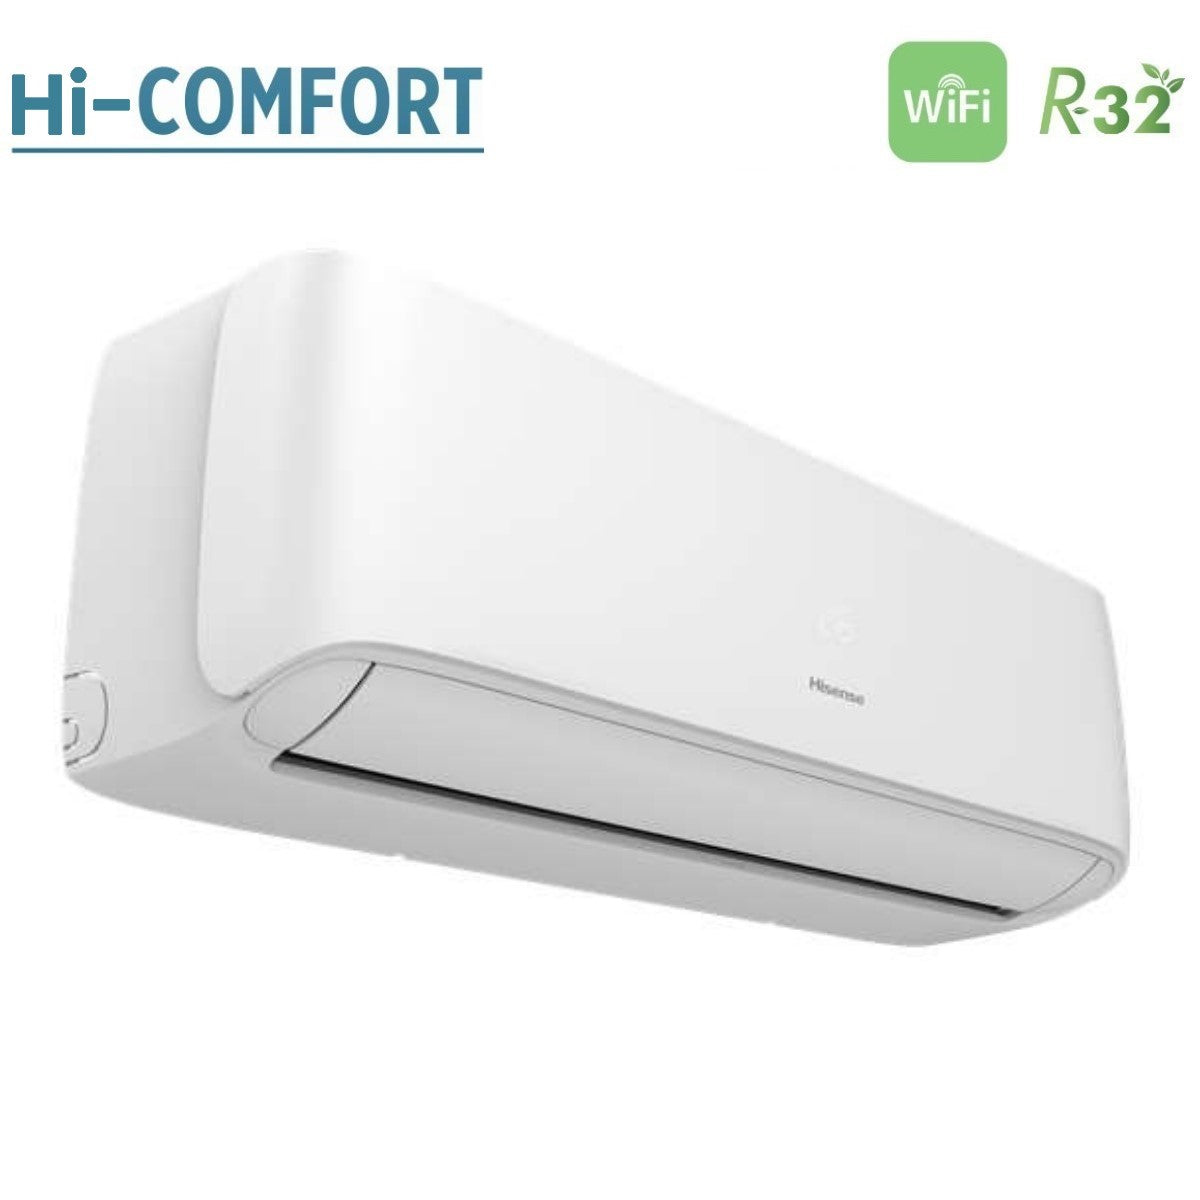 immagine-3-hisense-climatizzatore-condizionatore-hisense-inverter-serie-hi-comfort-9000-btu-cf25yr04g-r-32-wi-fi-integrato-classe-aa-novita